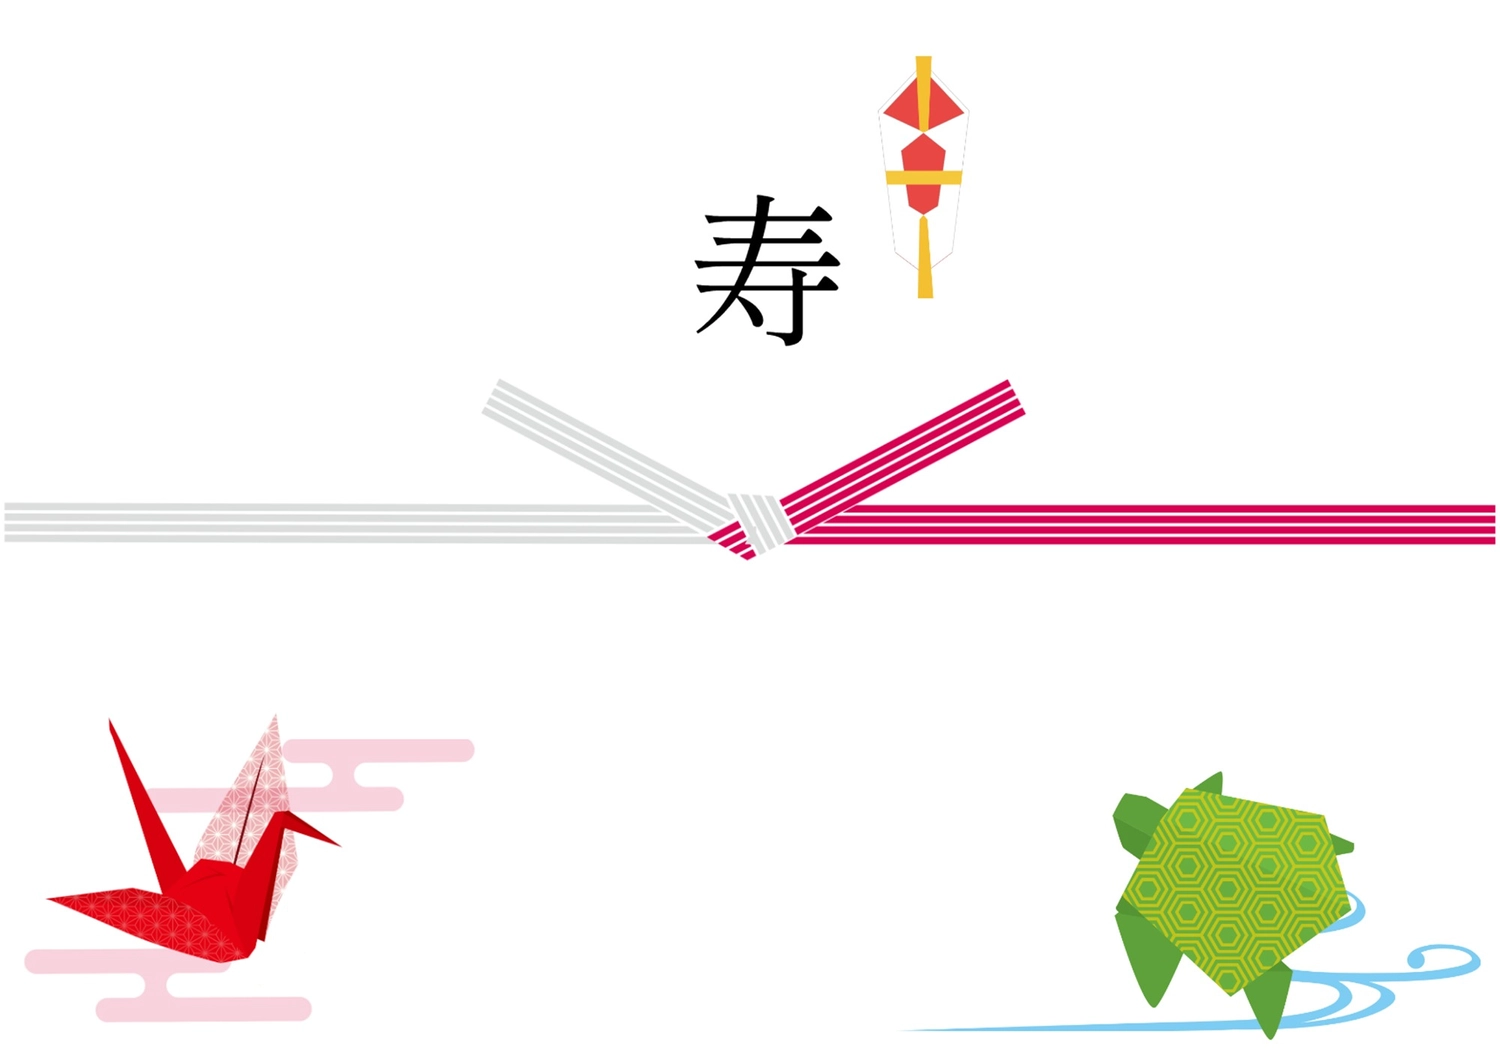 鶴と亀の入れストが描かれた寿, the iron, longevity, business, Sales promotion tool template